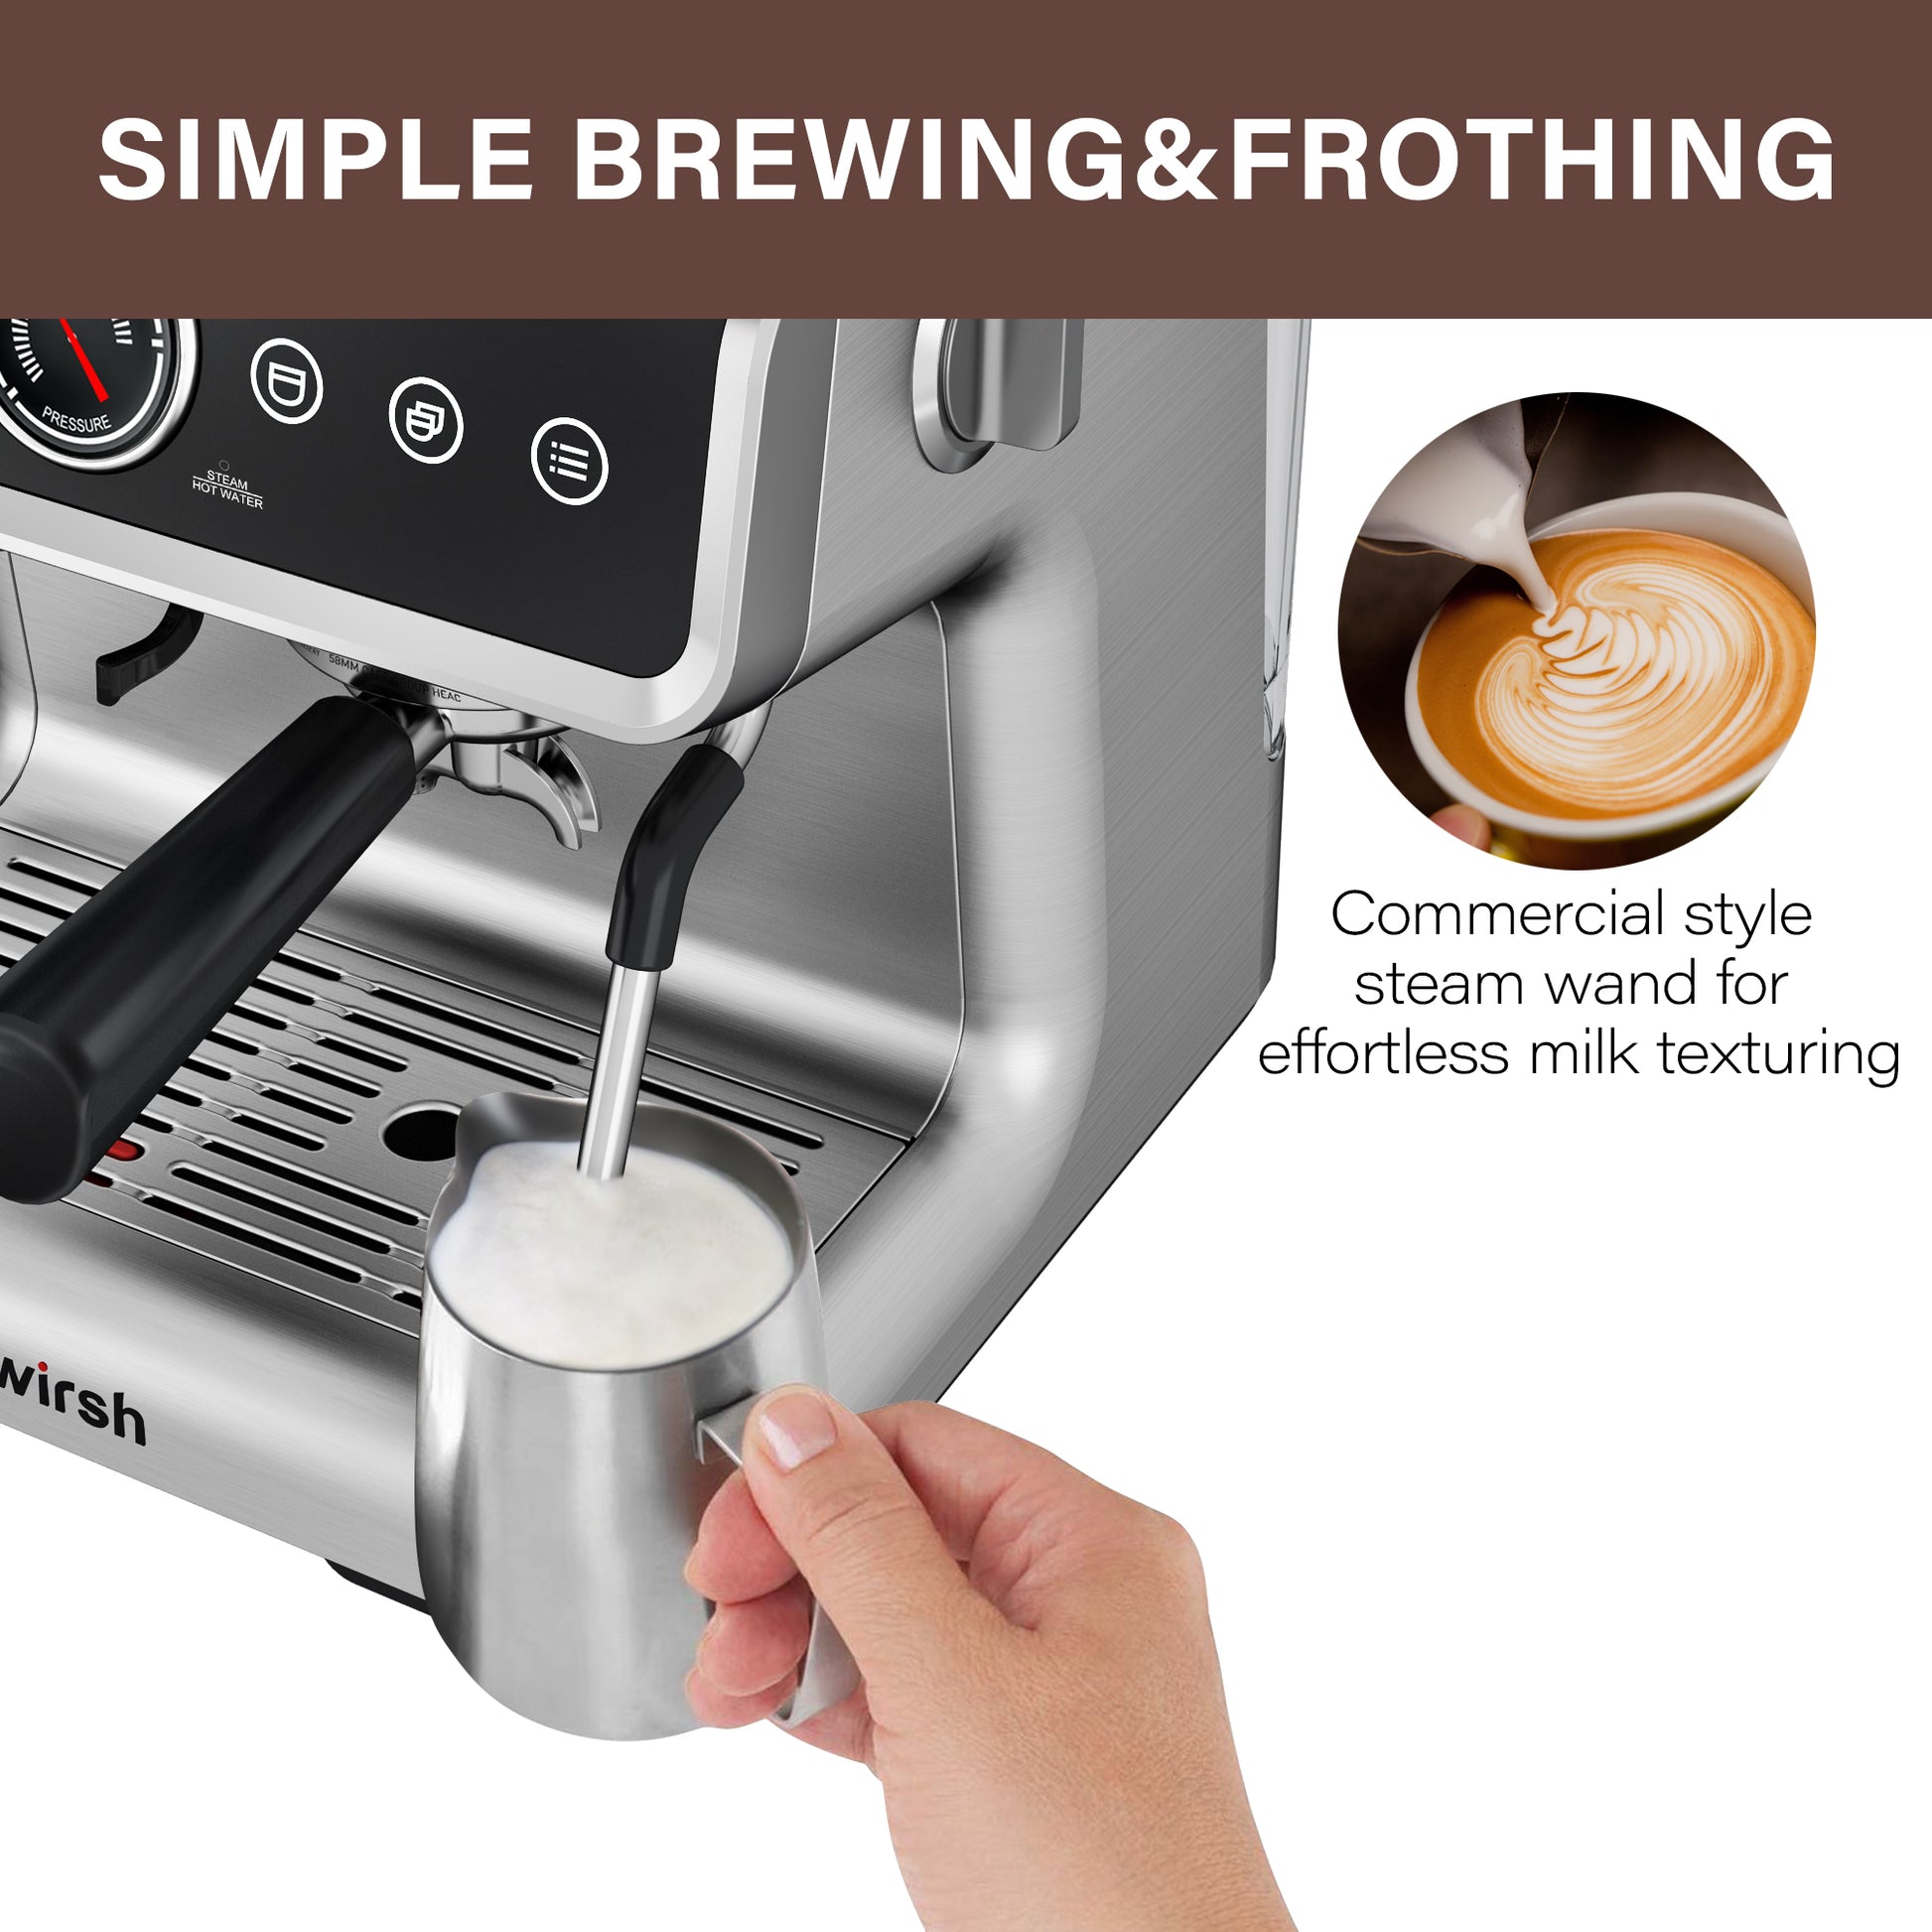 <img src="espresso machine.jpg" alt="wirsh espresso machine brewing frothing"/>